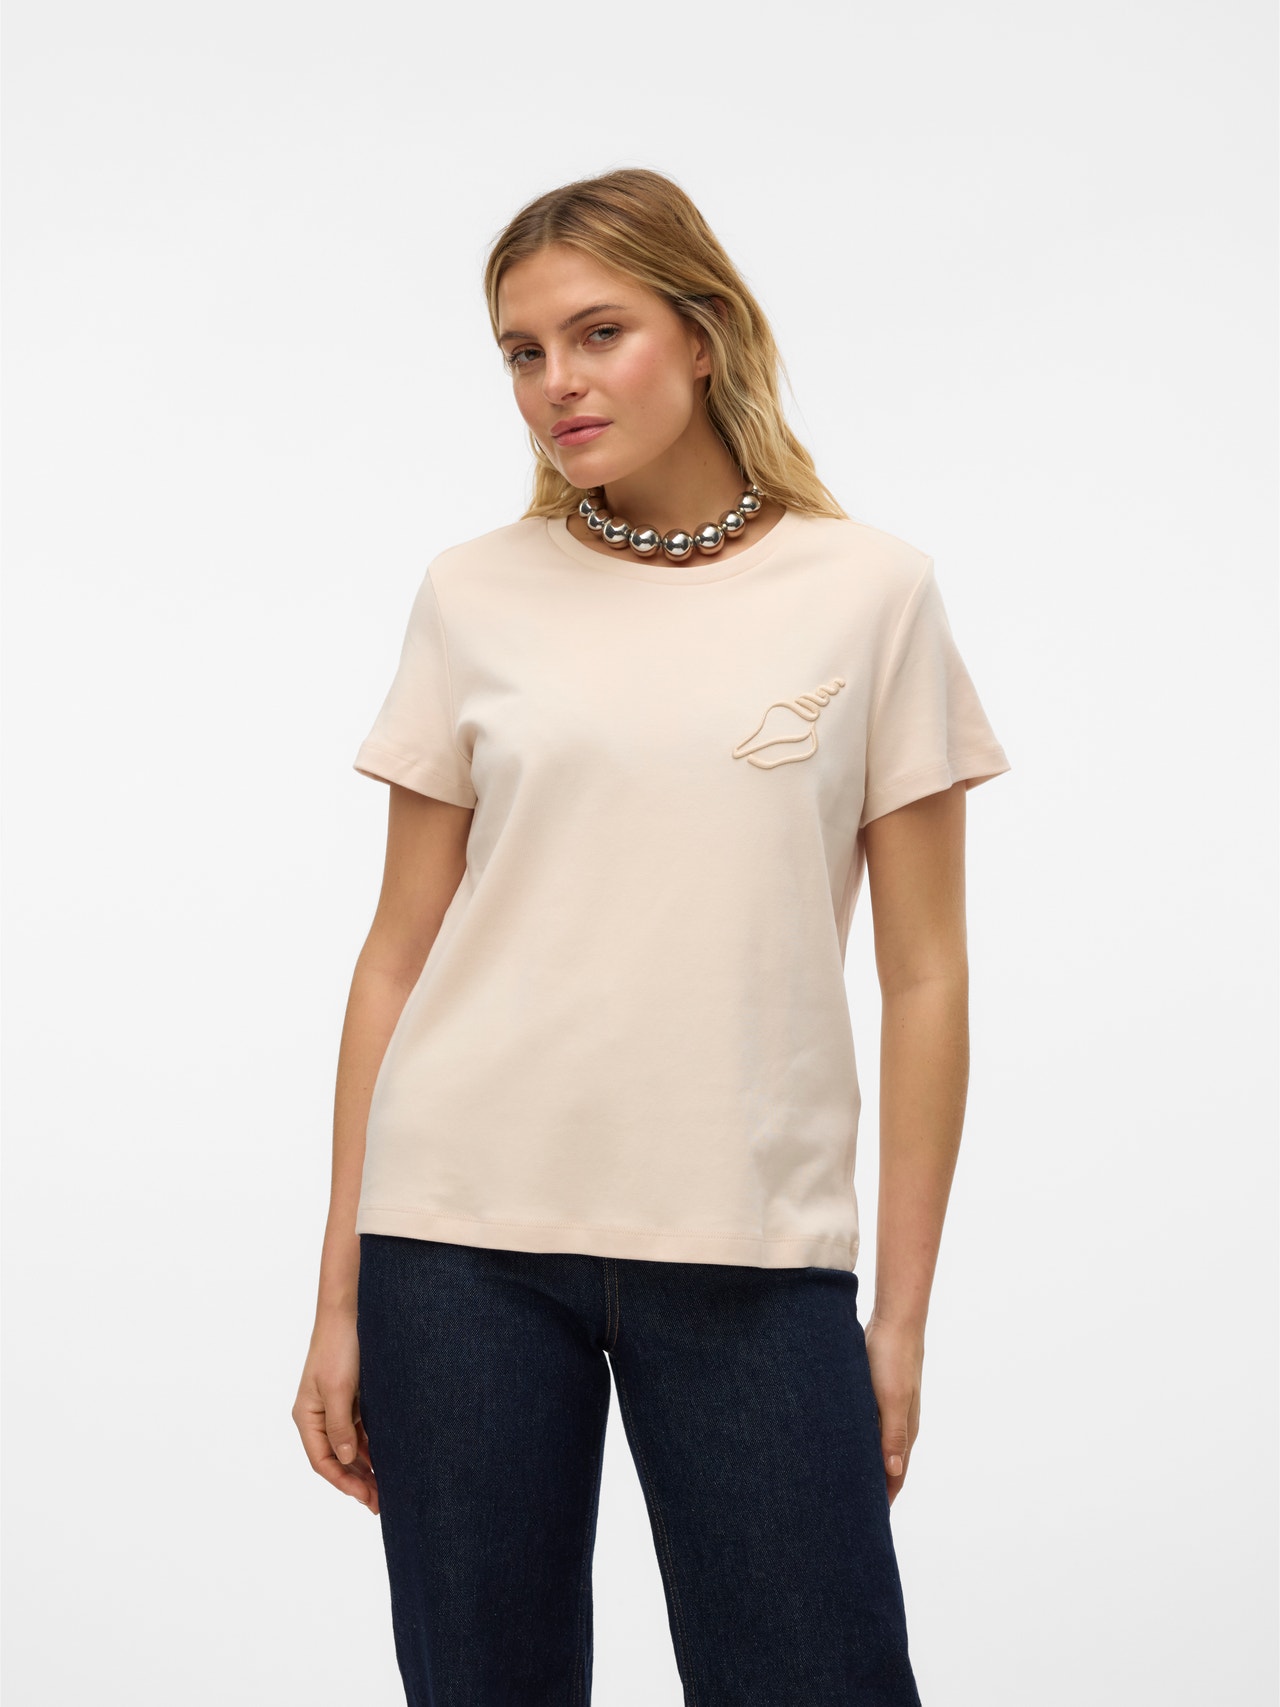 Vero Moda VMFRANCIS T-shirts -Sand Dollar - 10312598